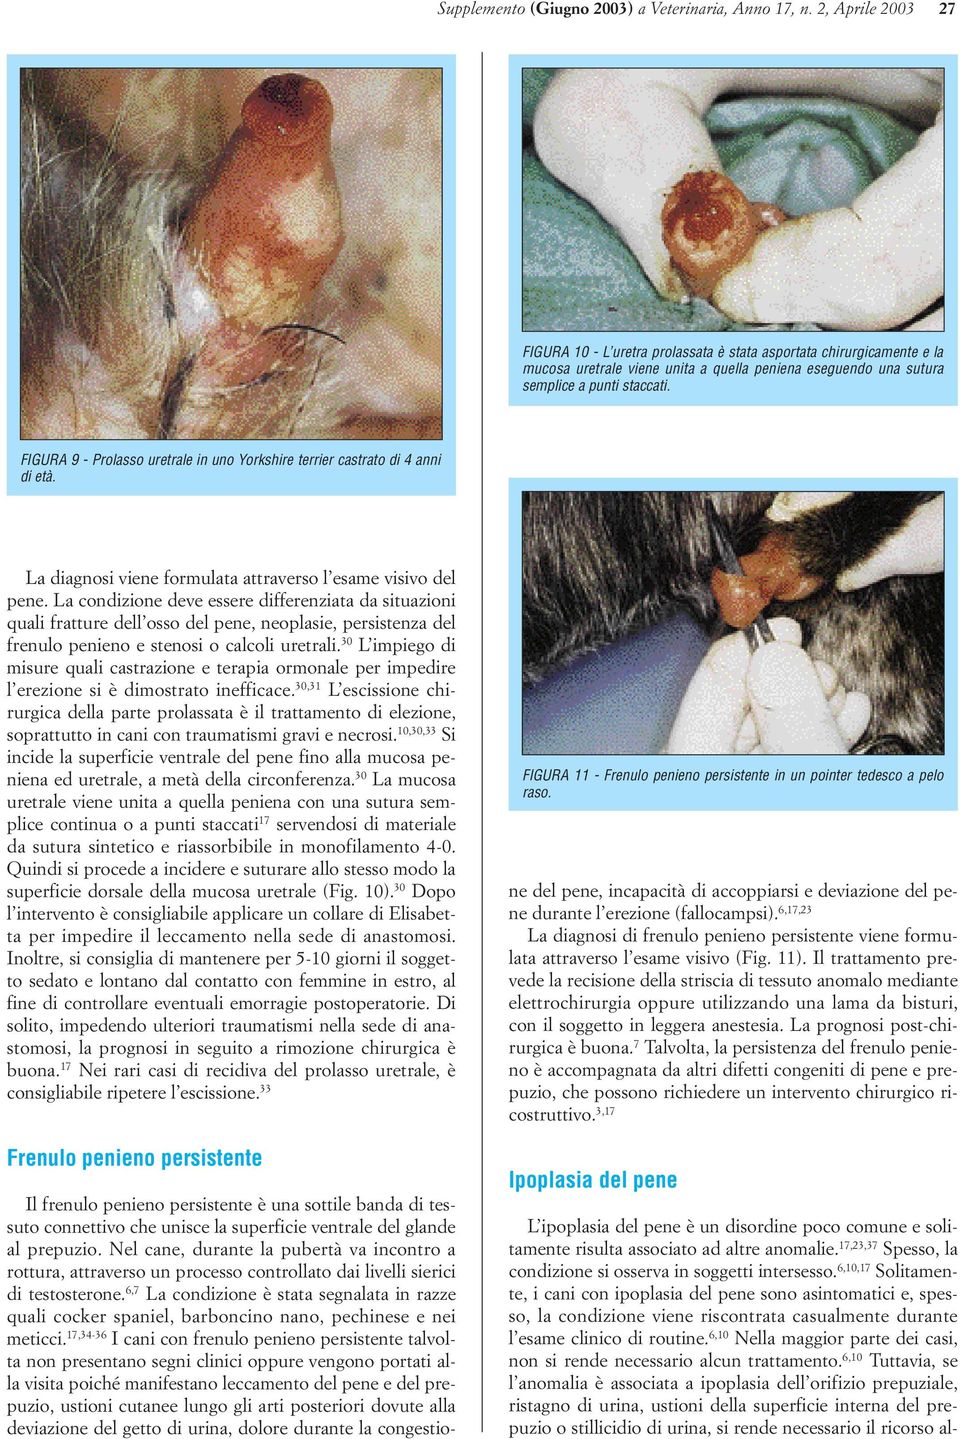 FIGURA 9 - Prolasso uretrale in uno Yorkshire terrier castrato di 4 anni di età. La diagnosi viene formulata attraverso l esame visivo del pene.